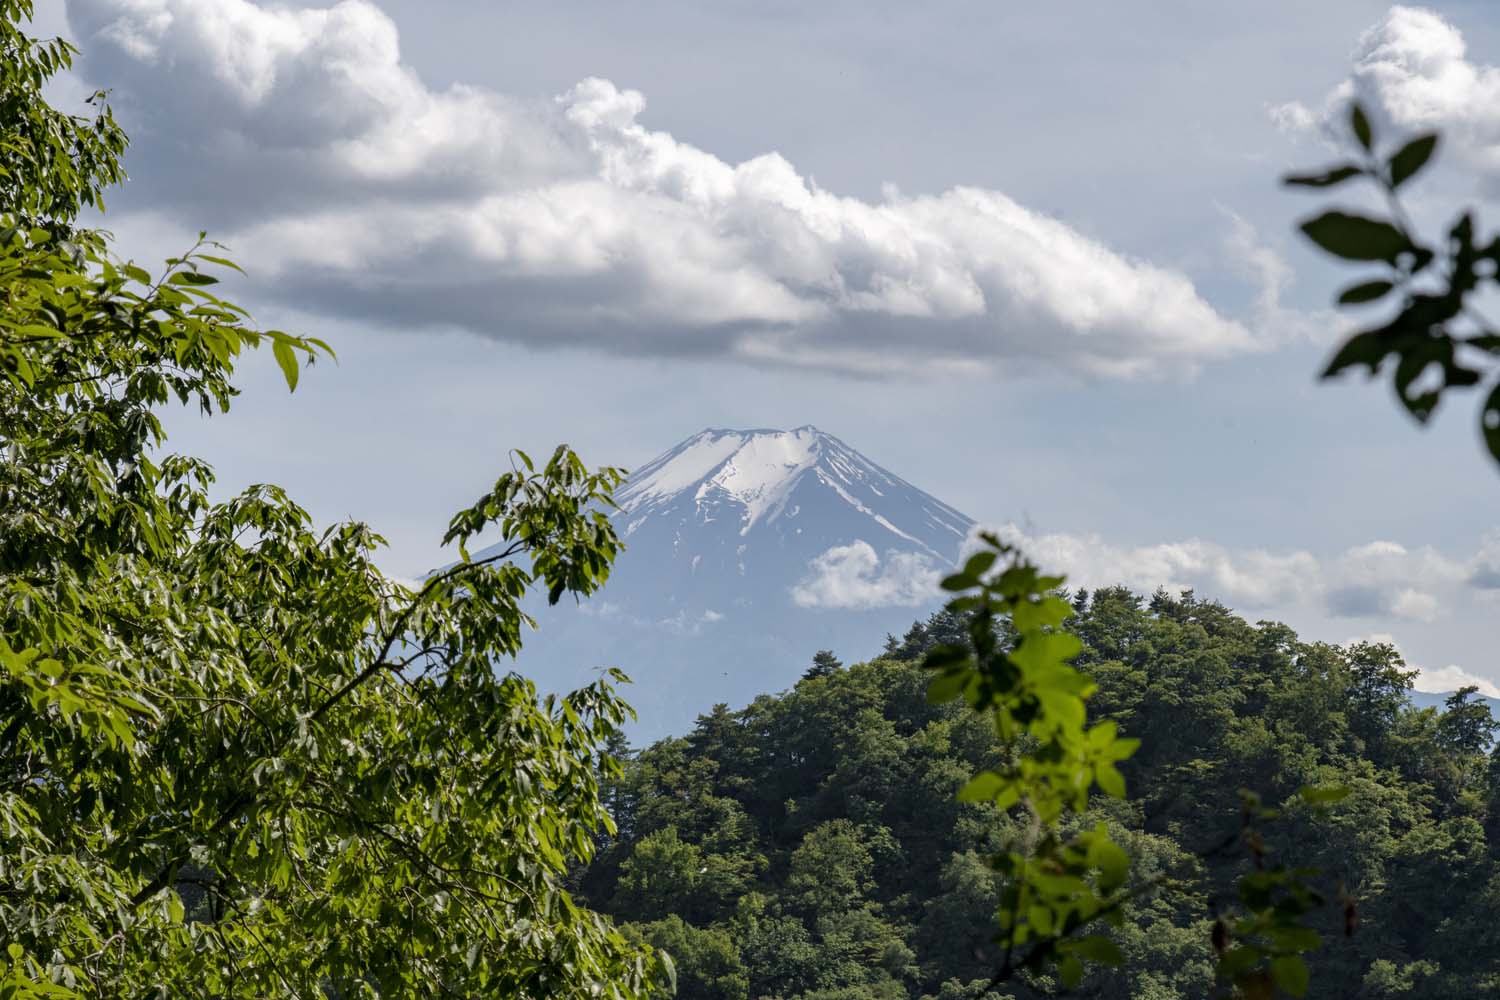 山頂は蝶の乱舞の向こうに富士山の絶景